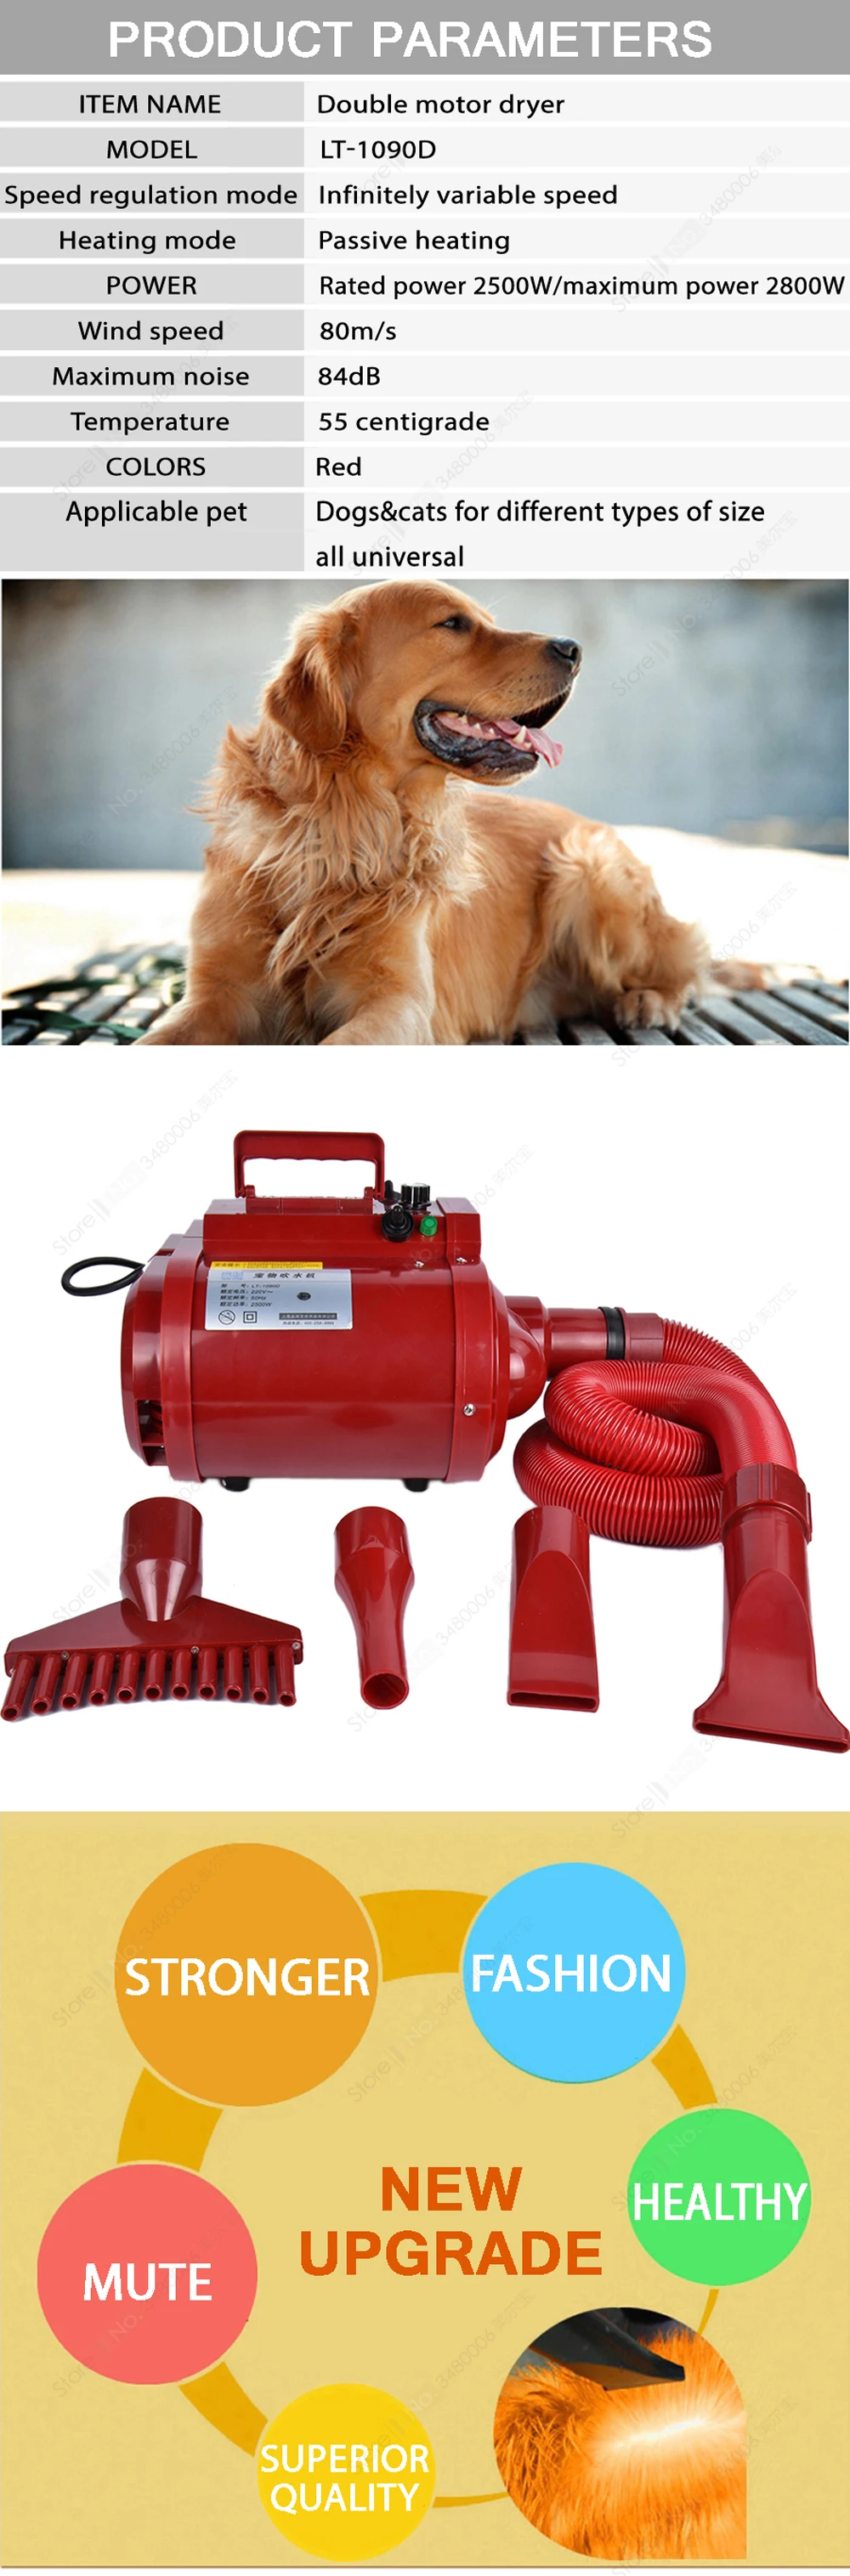 Бренд фен для домашних питомцев собака/кошка сушилка для груминга/воздуходувка двойной мотор ветровая машина ПЭТ одежда сушилка 100-240 В/2500 Вт